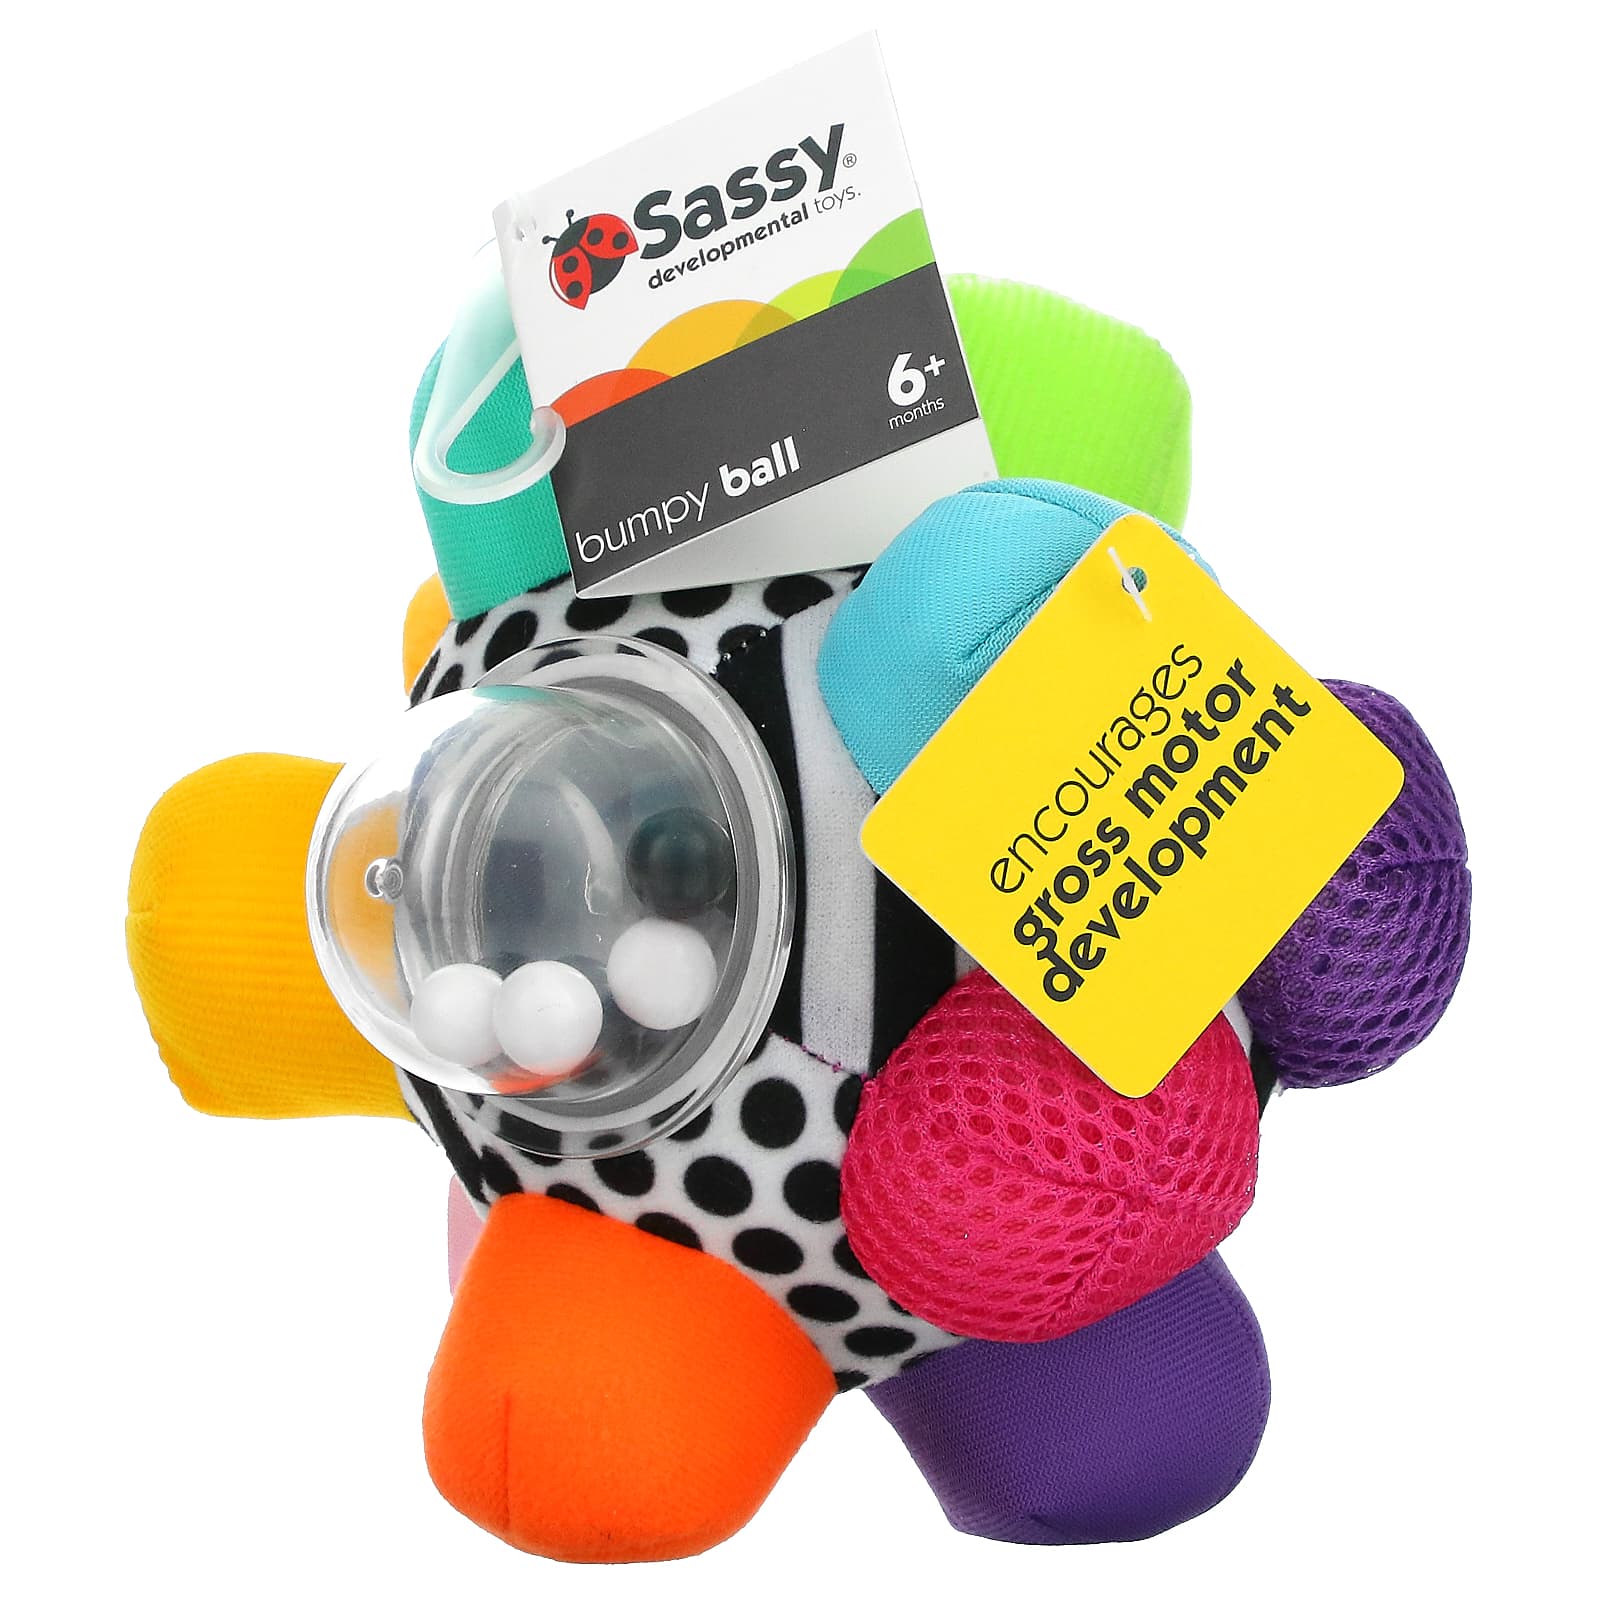 Ухабистый Мяч Sassy для детей от 6 месяцев мяч для ванны sassy discovery 6 месяцев 1 шт